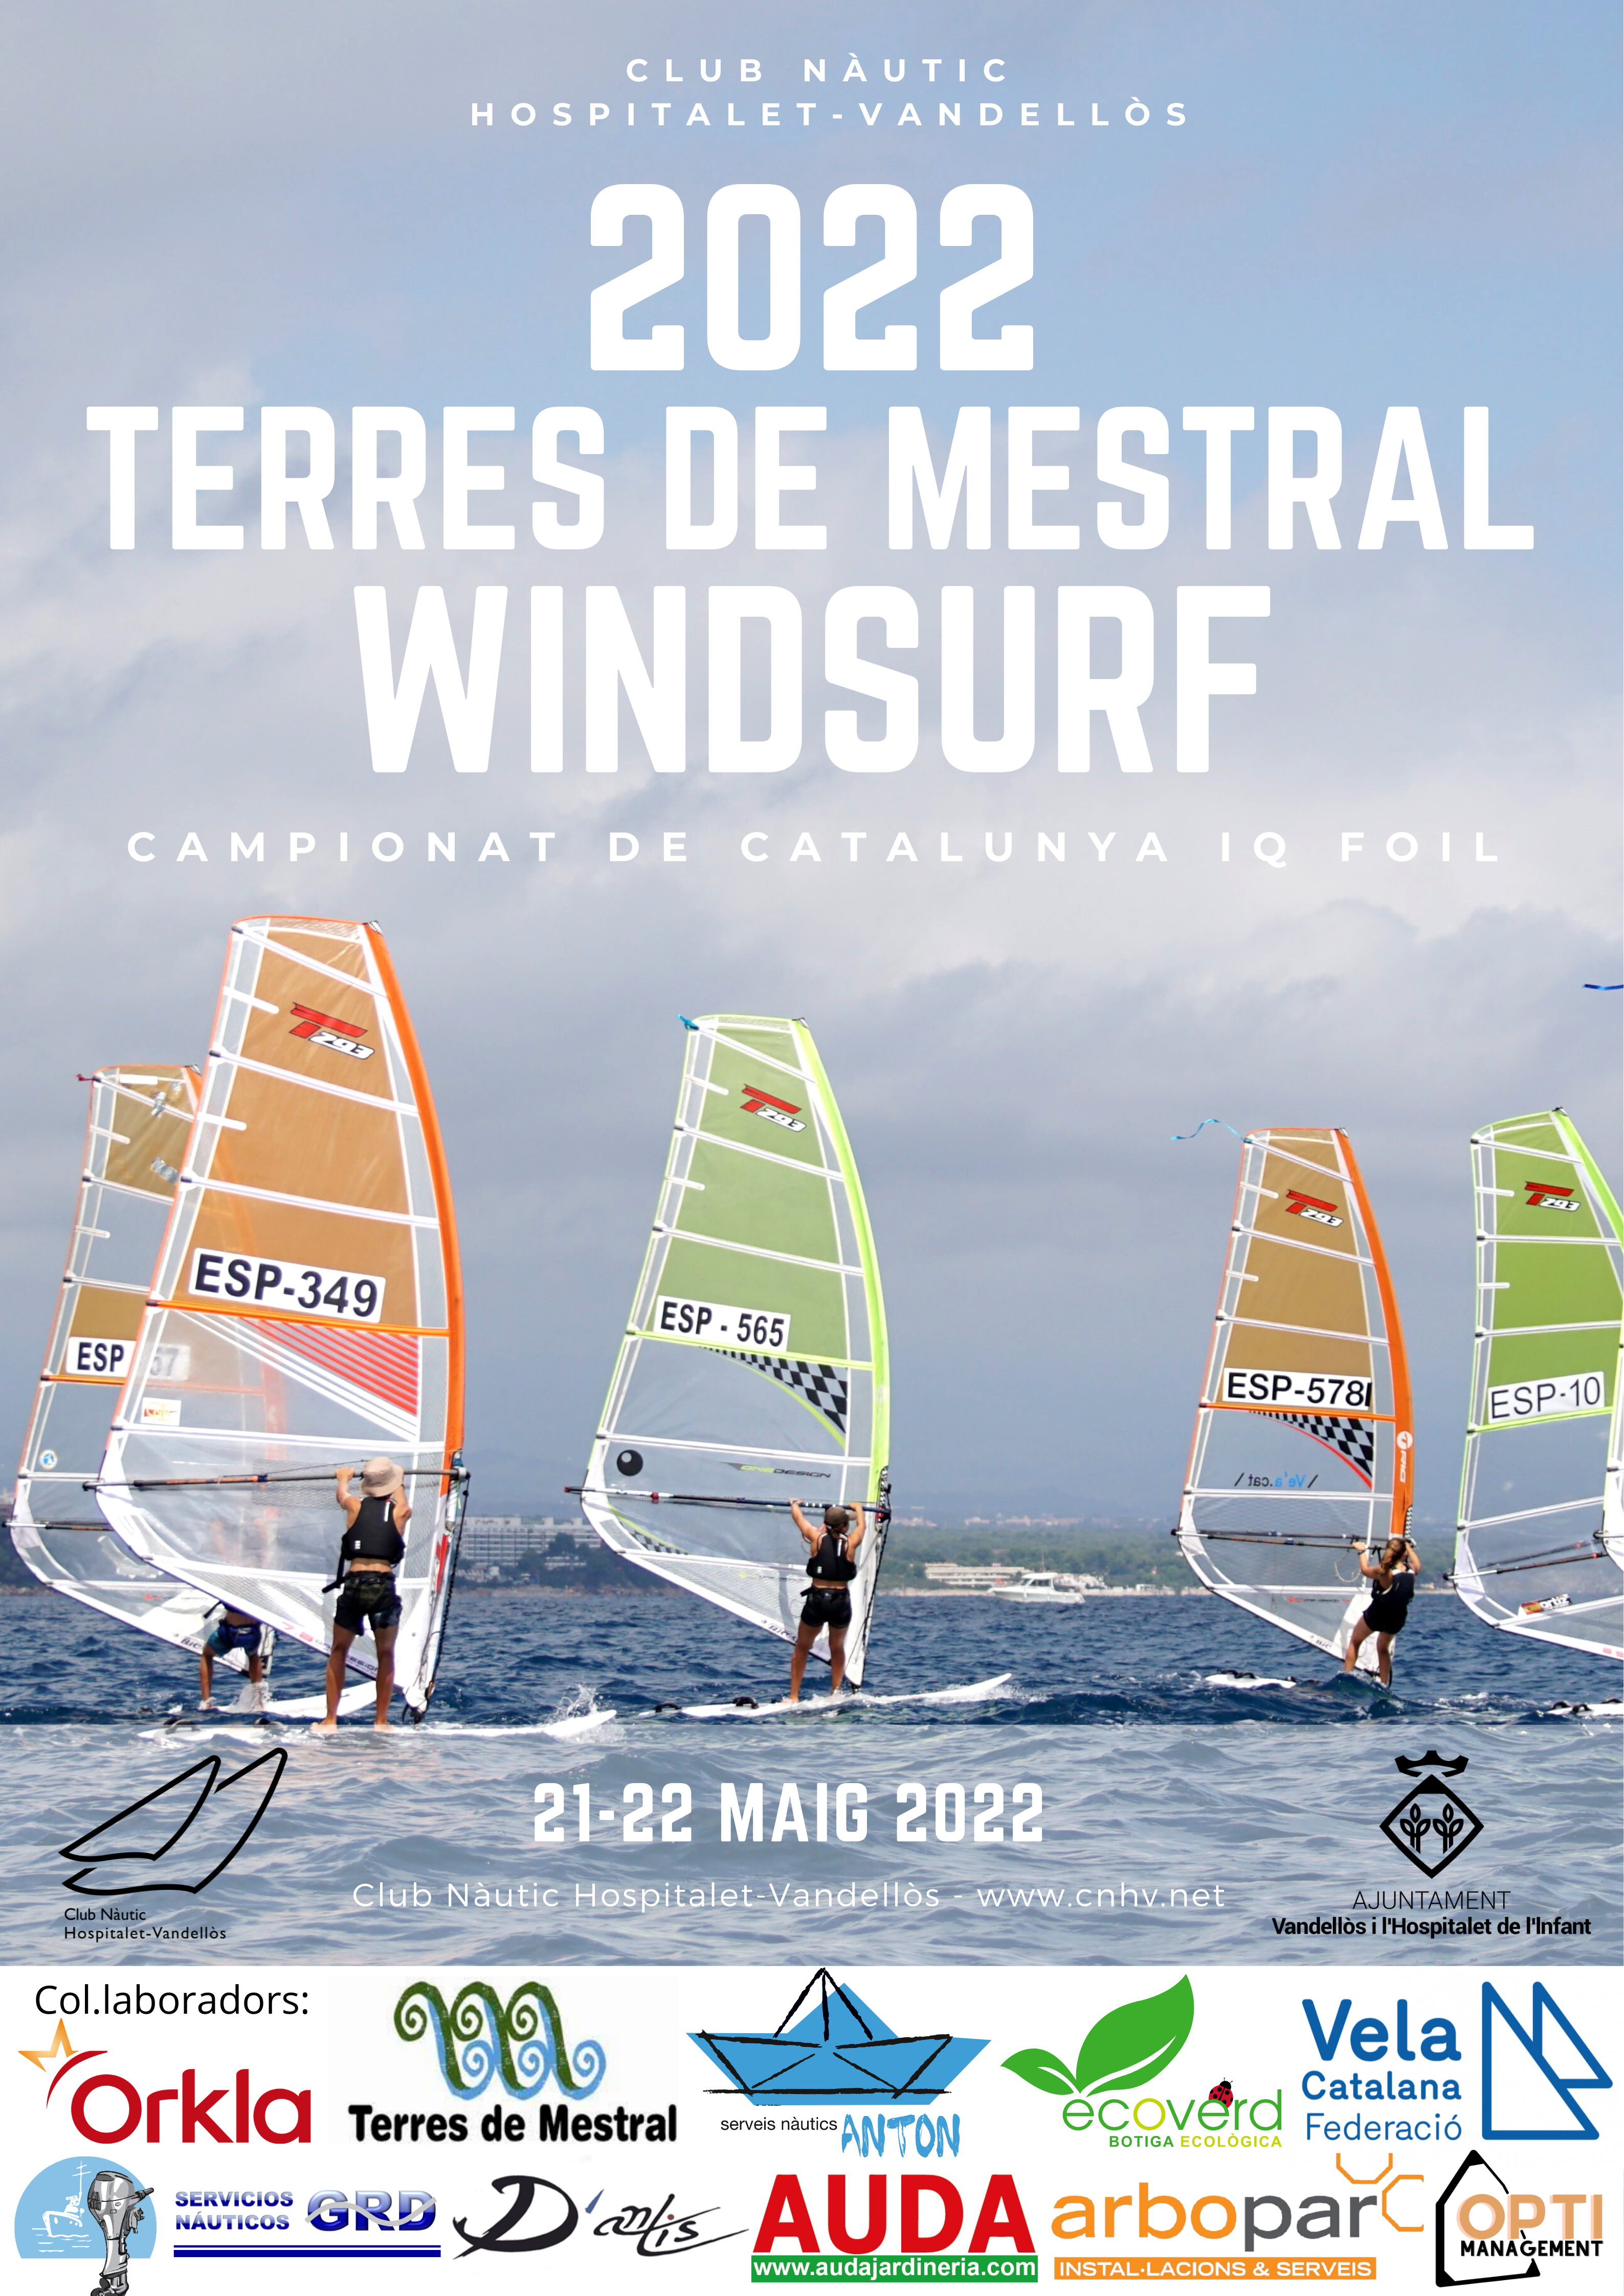 Regata de windsurf Terres de Mestral - Campionat de Catalunya d'IQFOIL / 21 i 22 de maig, a l'Hospitalet de l'Infant